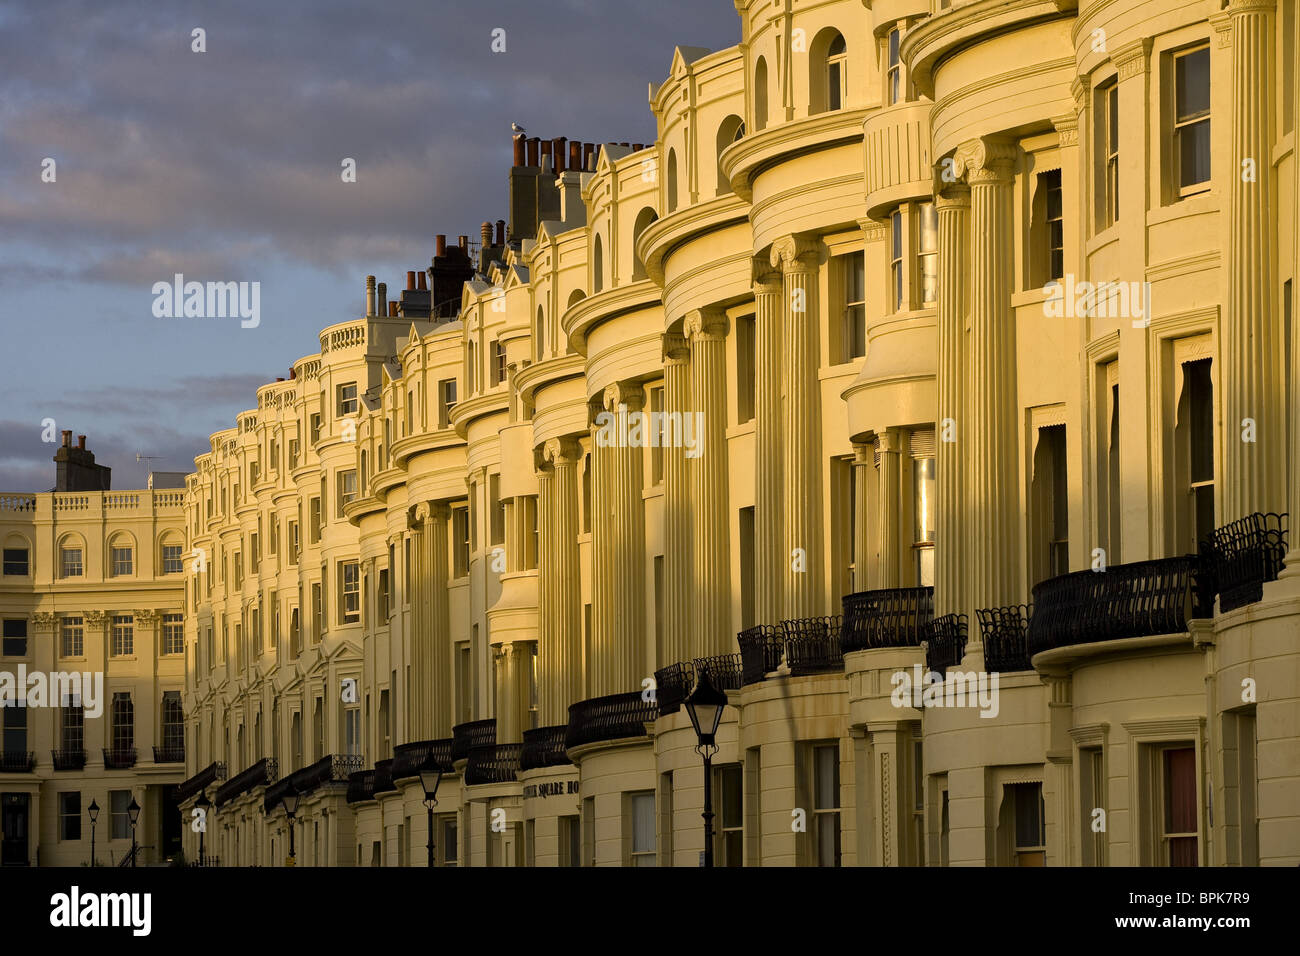 Rangée de maisons de ville sur la place du Nouveau-Brunswick dans le style Regency, Brighton, East Sussex, Angleterre, Grande-Bretagne, Europe Banque D'Images